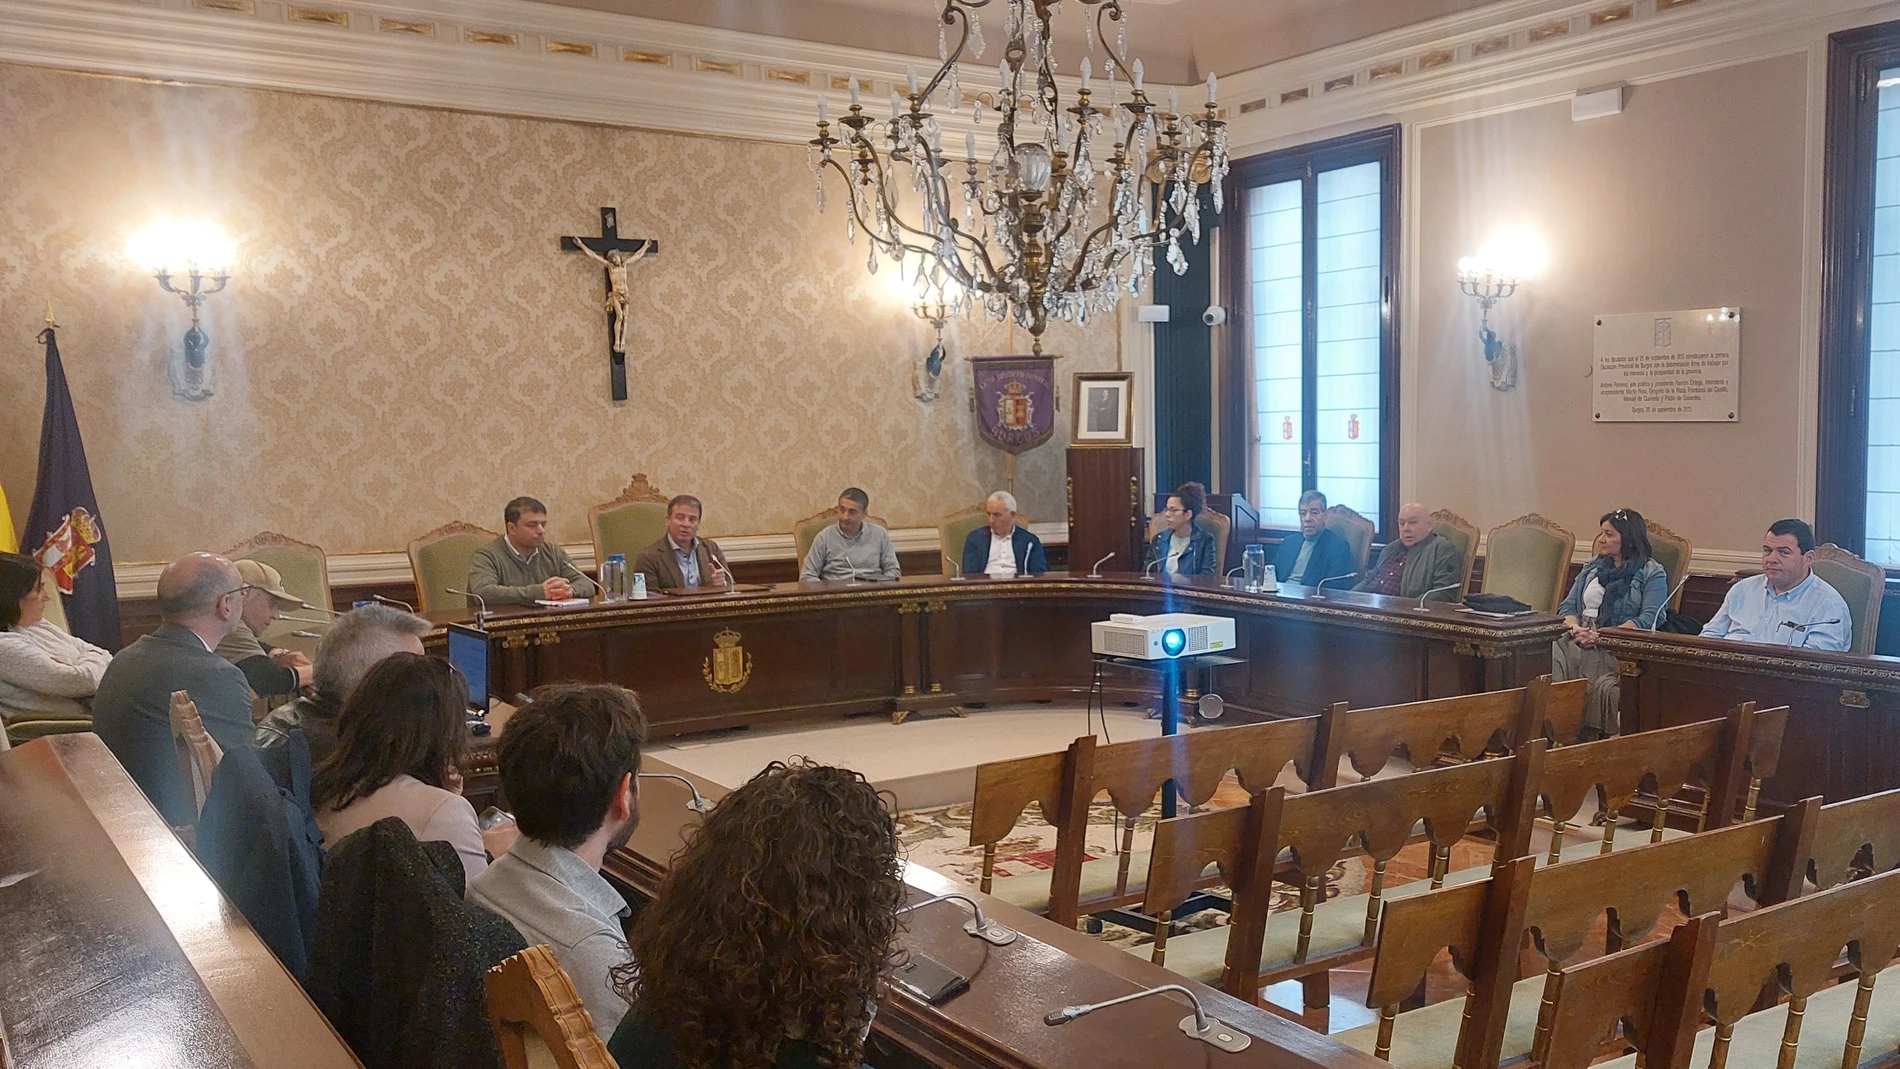 El presidente de la Diputación de Burgos, Borja Suárez, presenta el Plan Garoña a los alcaldes